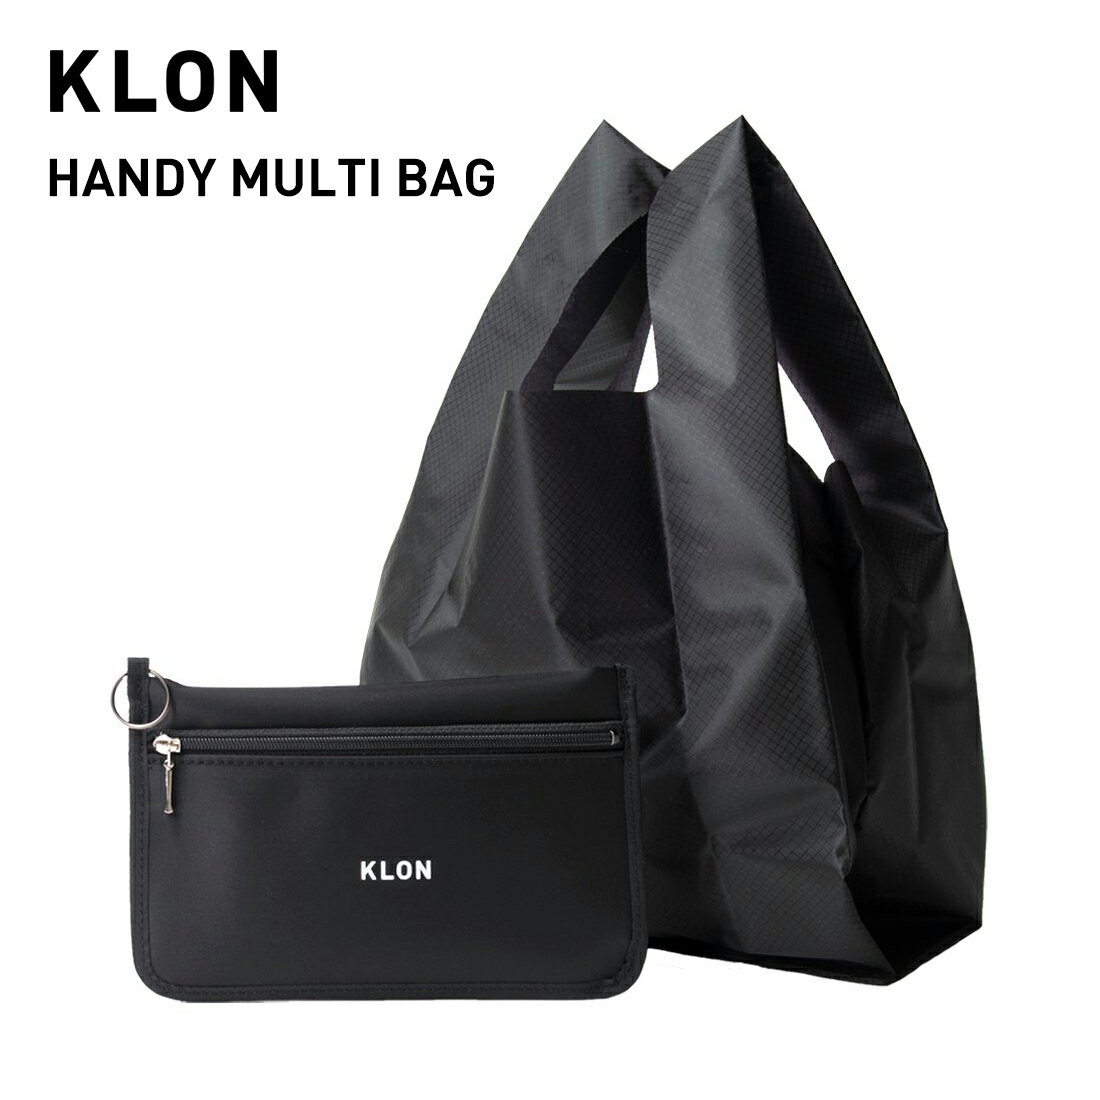 センスのいいエコバッグ エコバッグ ショッピングバッグ コンパクト ポーチ 折りたためる シンプル おしゃれ ブラック 黒 ナイロン ギフト プレゼント オールジェンダー ジェンダーレス ブランド KLON HANDY MULTI BAG